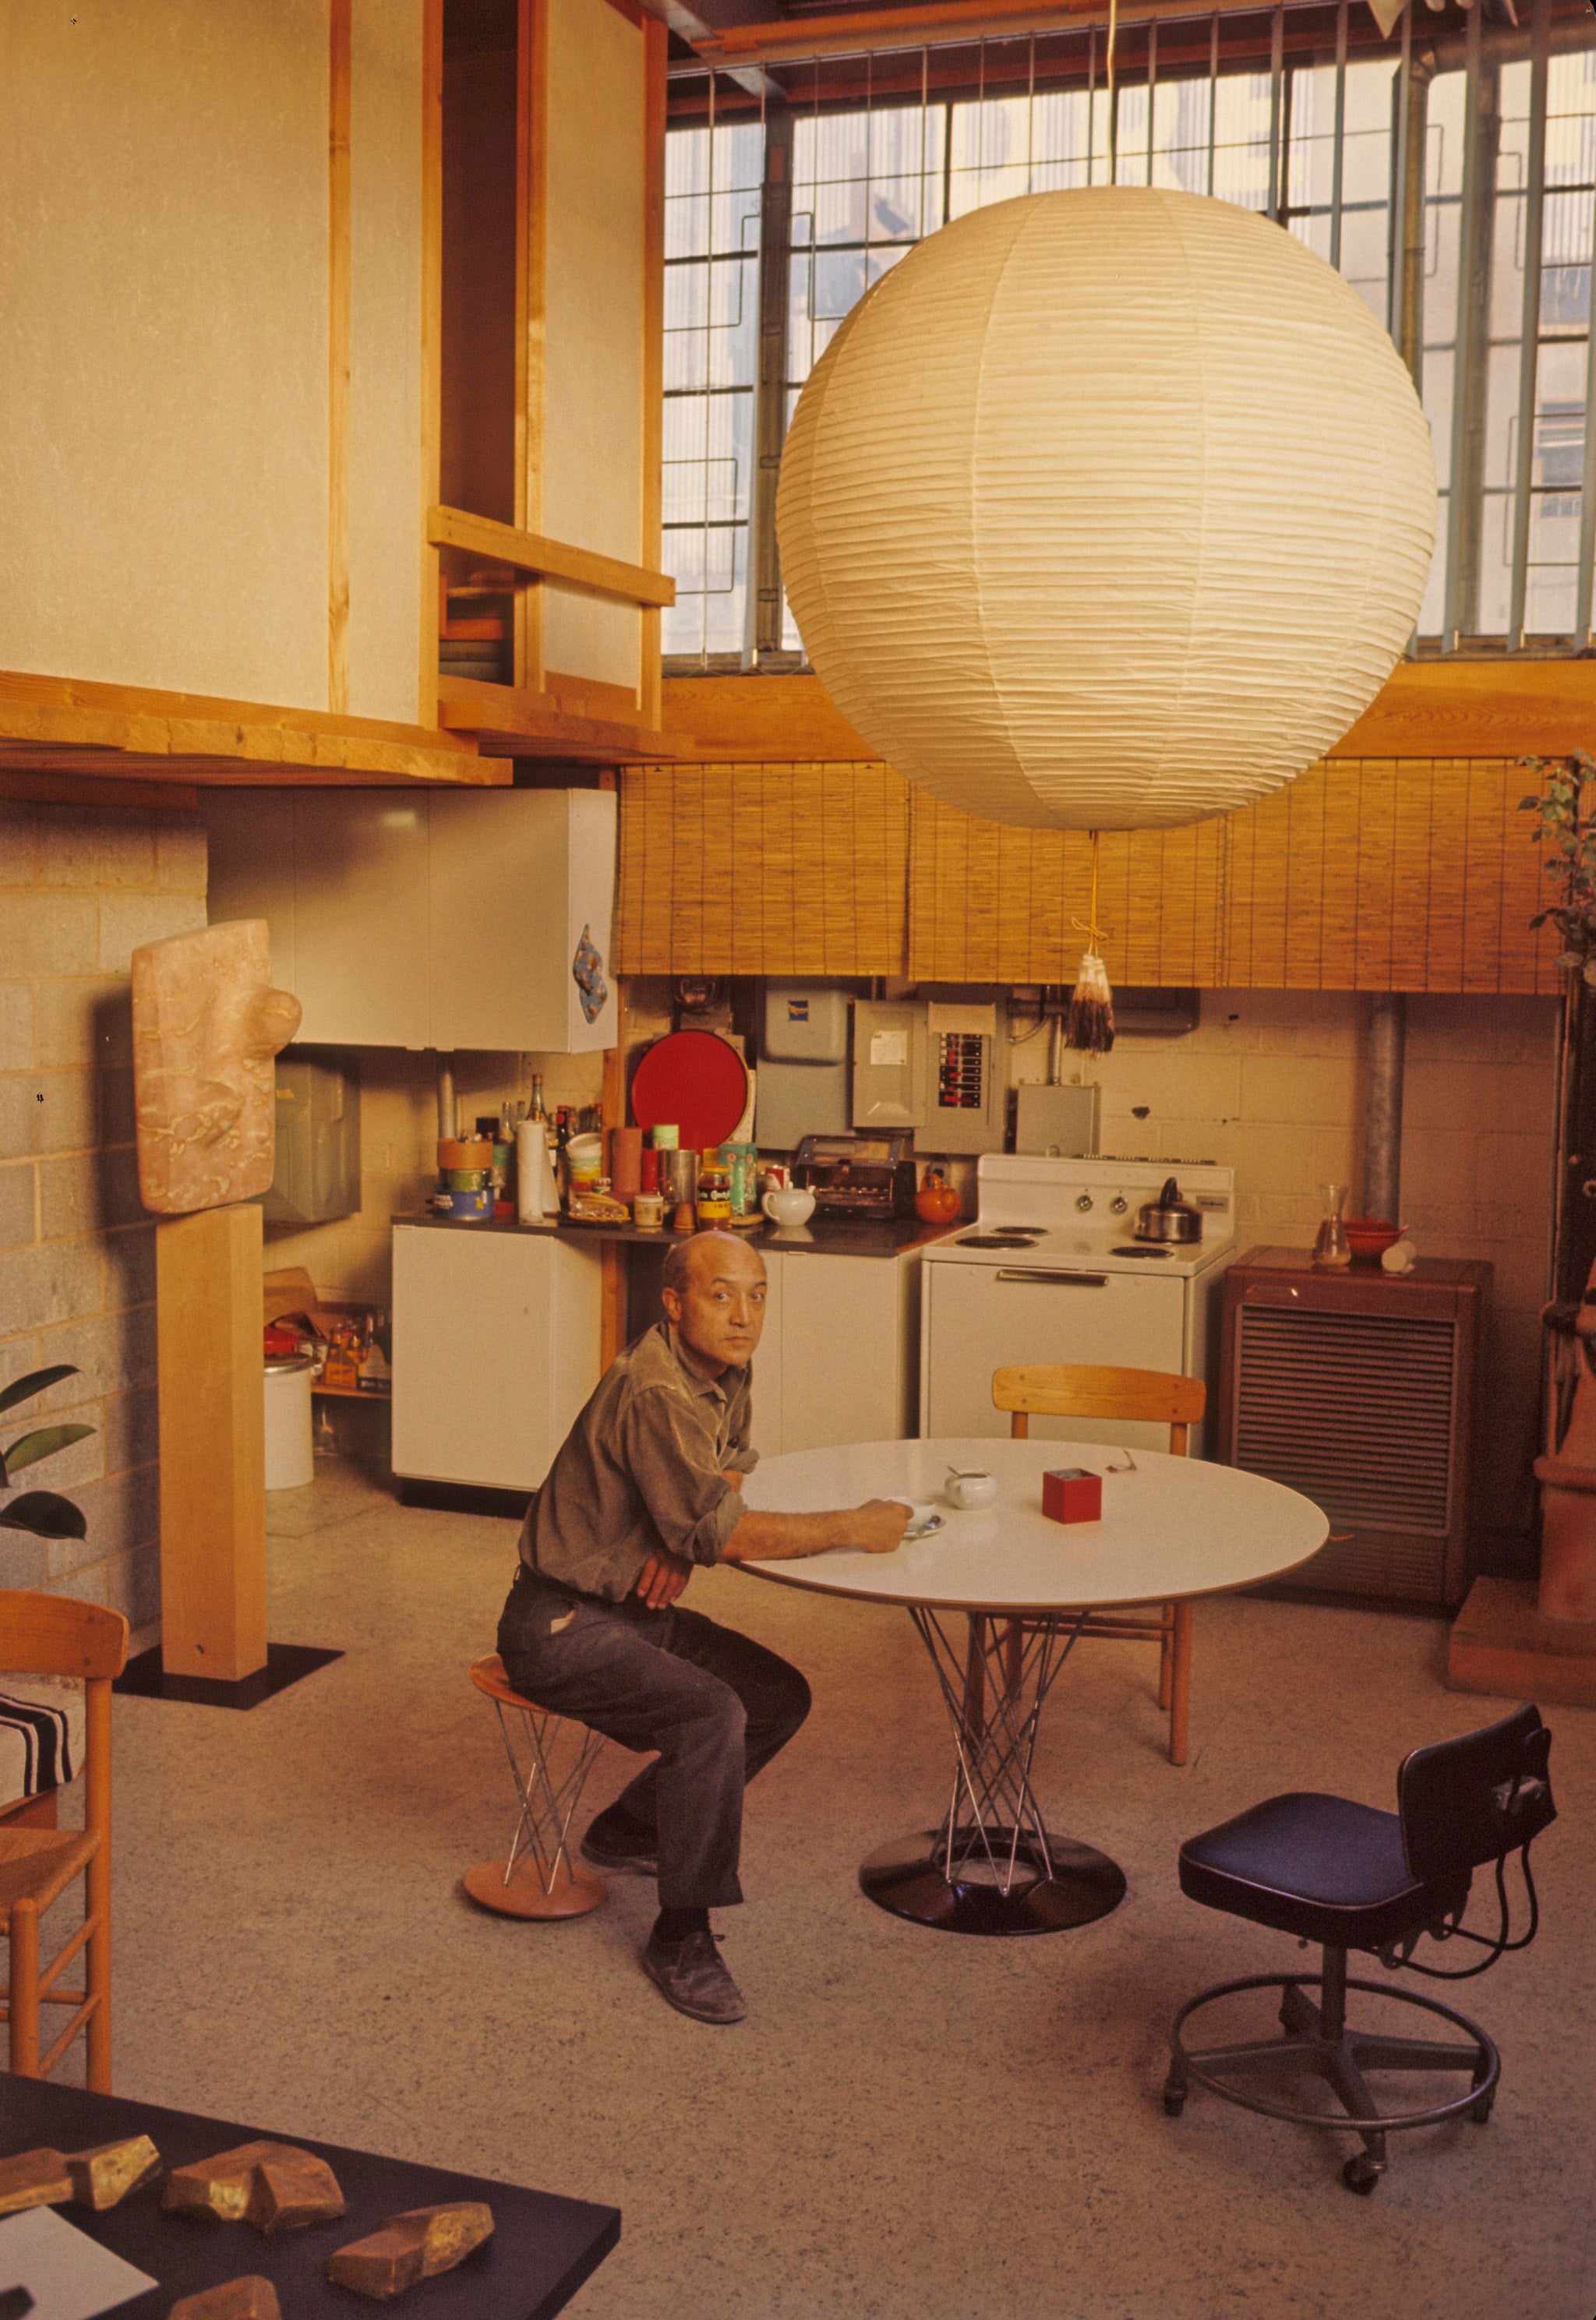 Noguchi in his Queens Studio, New York, 1964